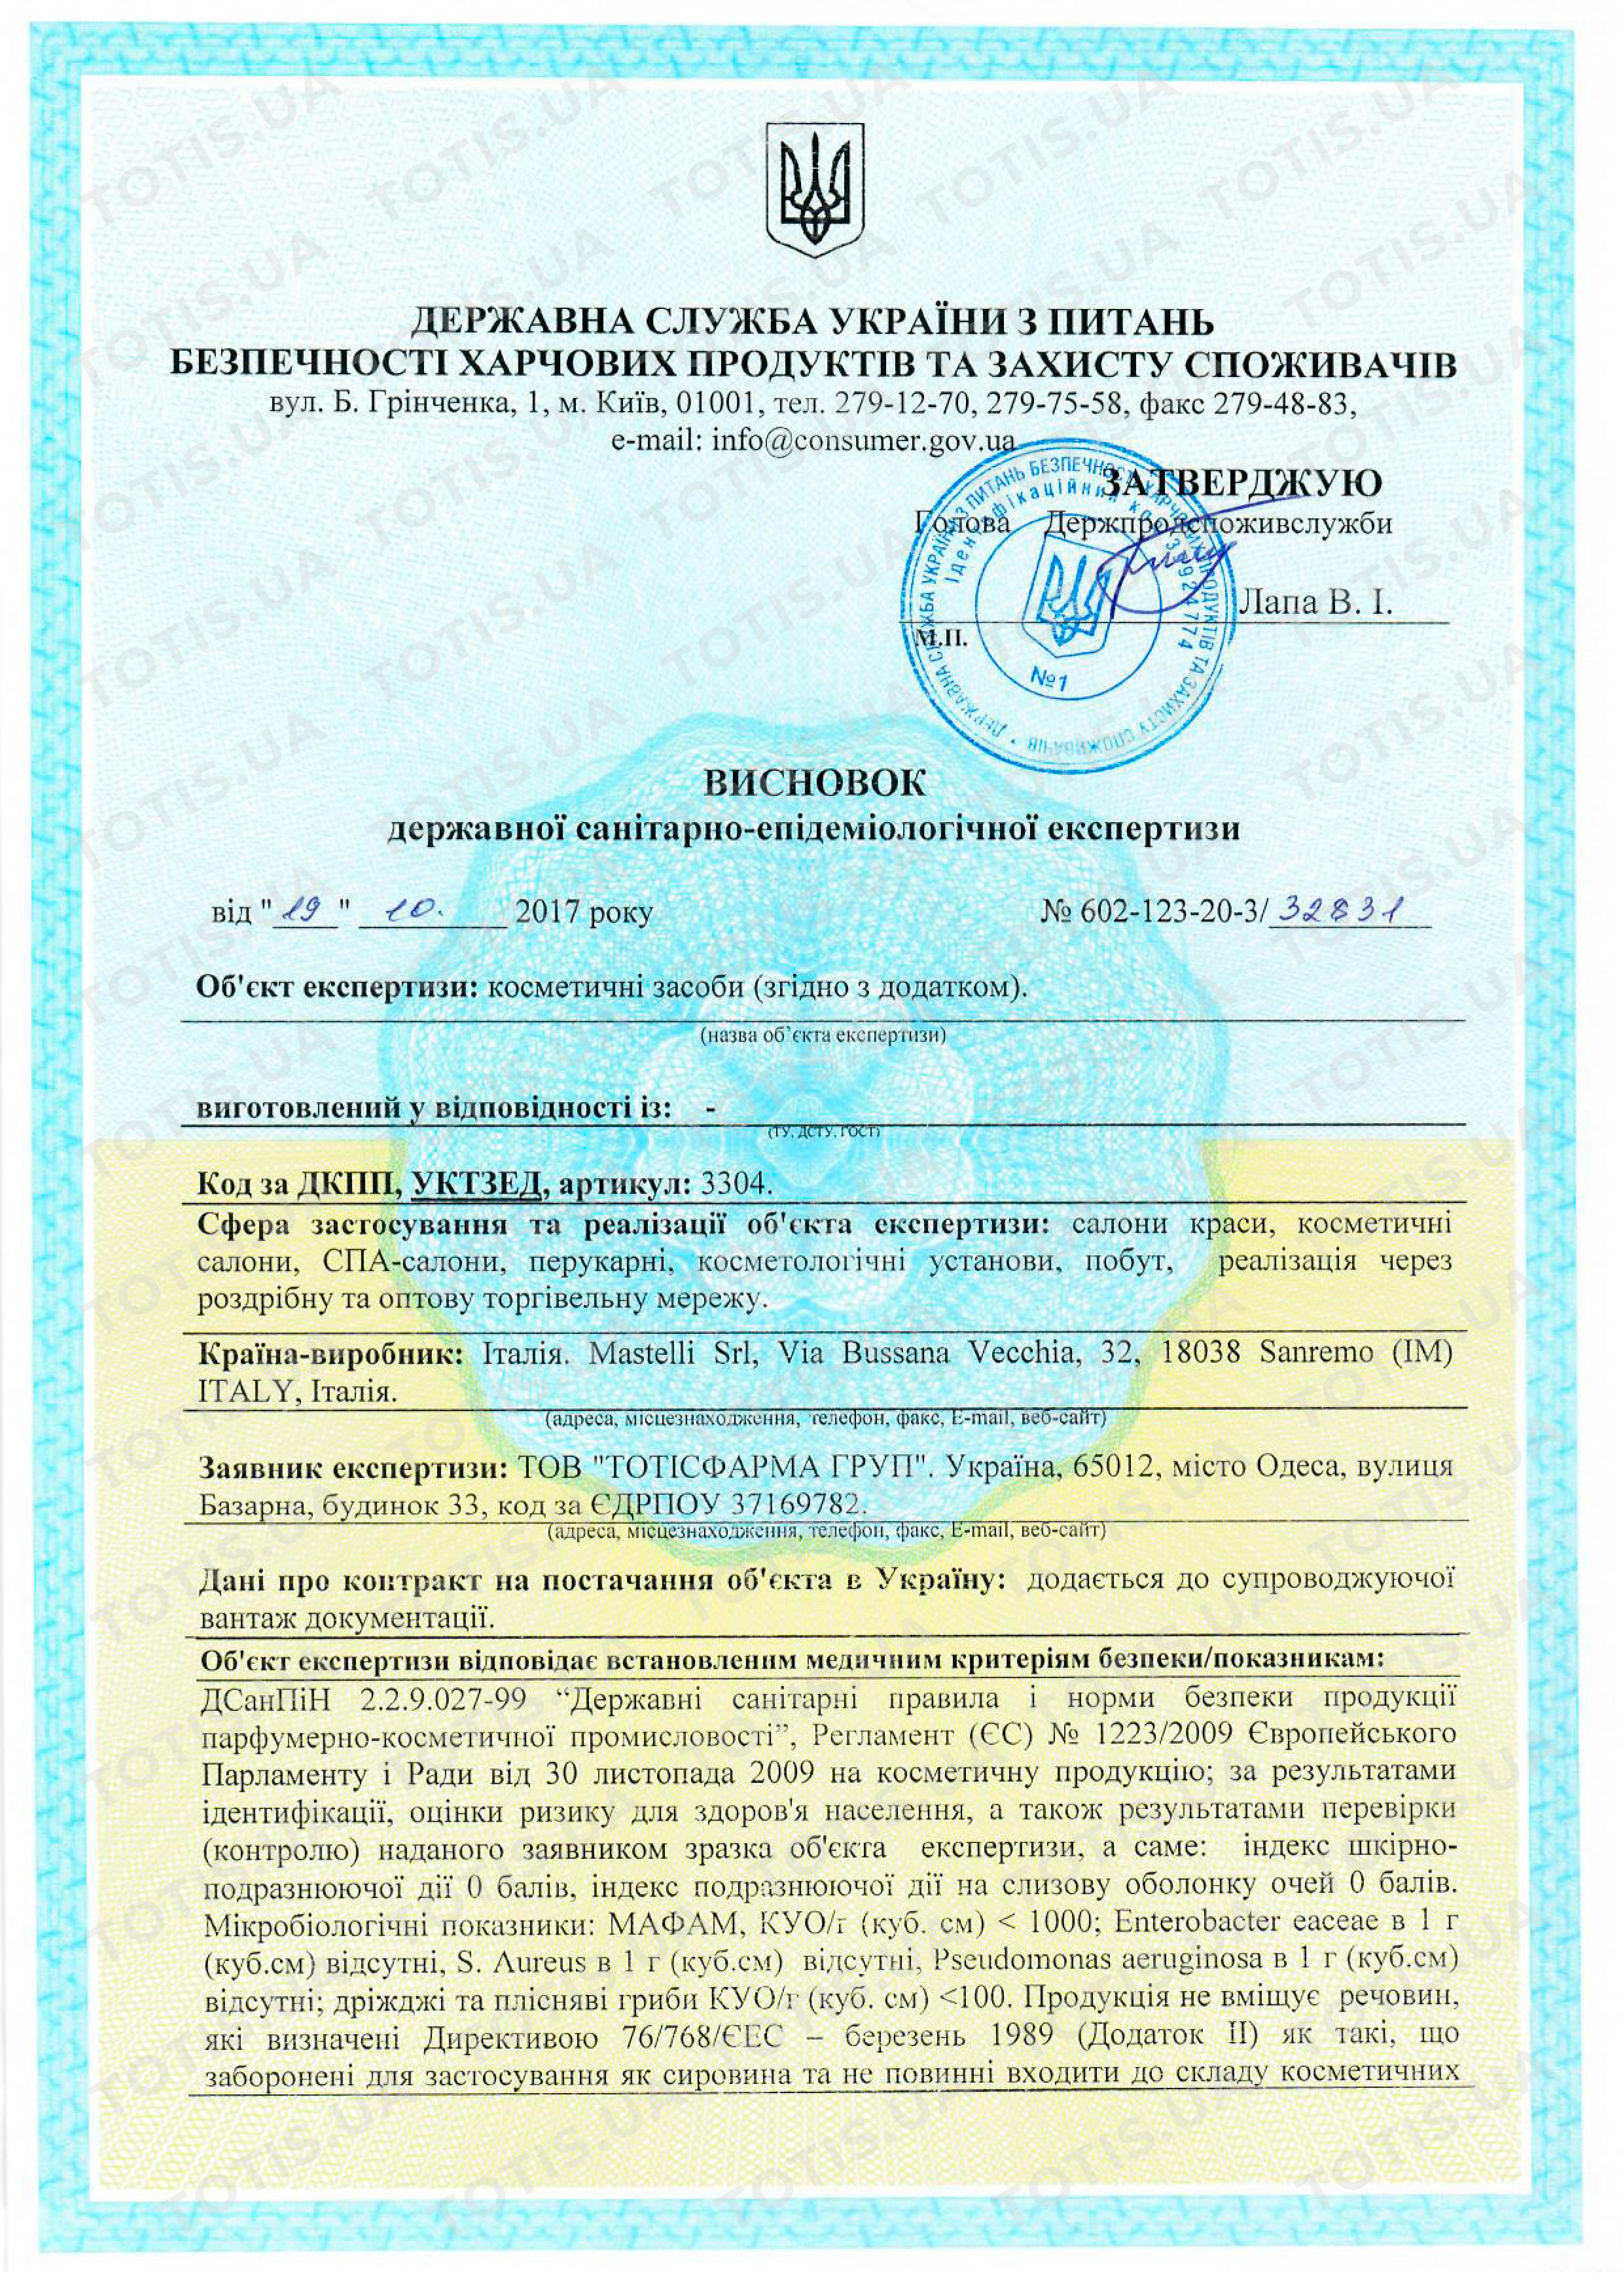 Сертификат препаратов Mastelli